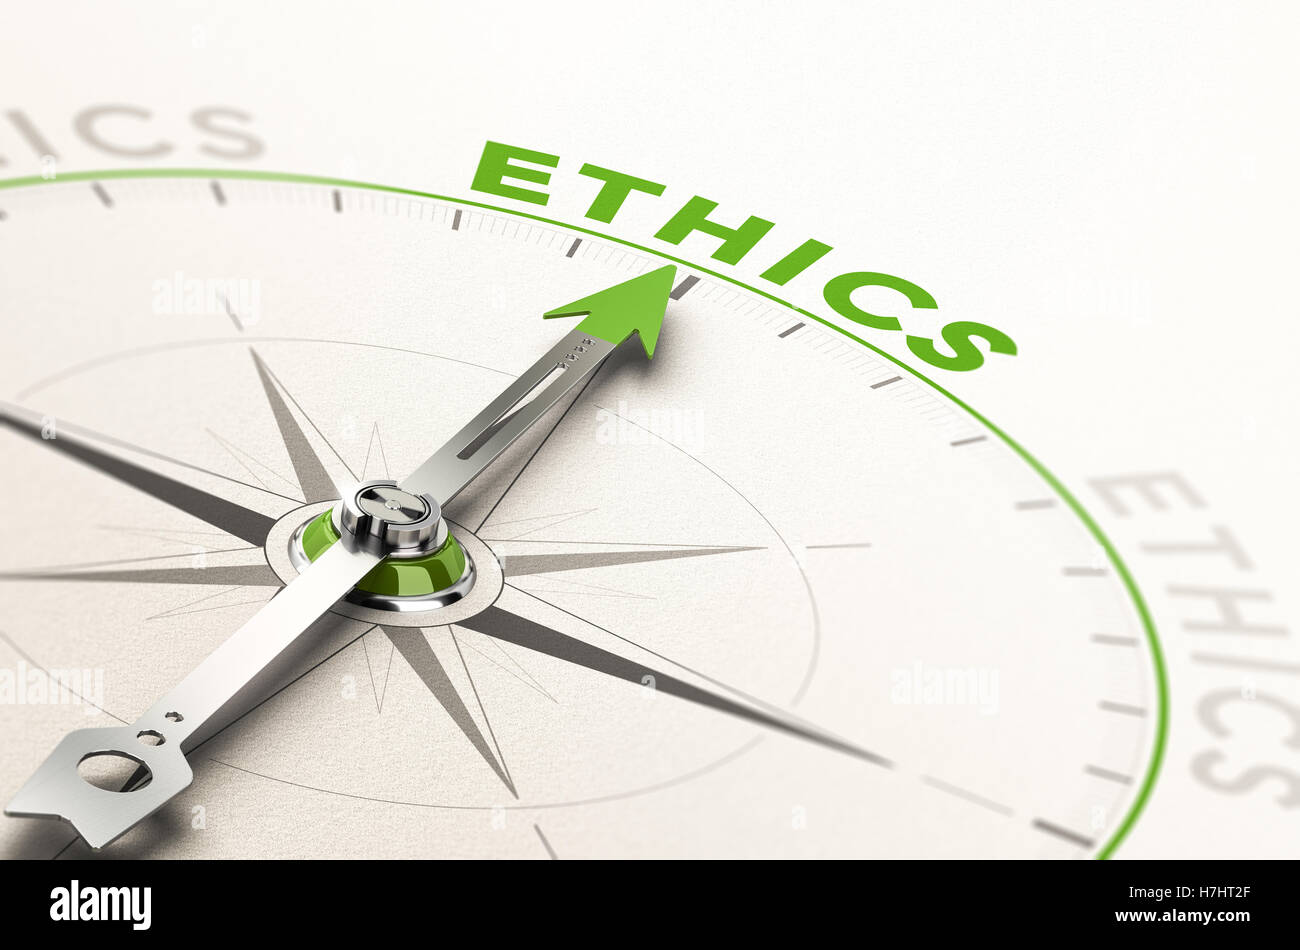 Con la aguja de la brújula apuntando la palabra ética. Ilustración 3d conceptual de la integridad en los negocios y morales Foto de stock